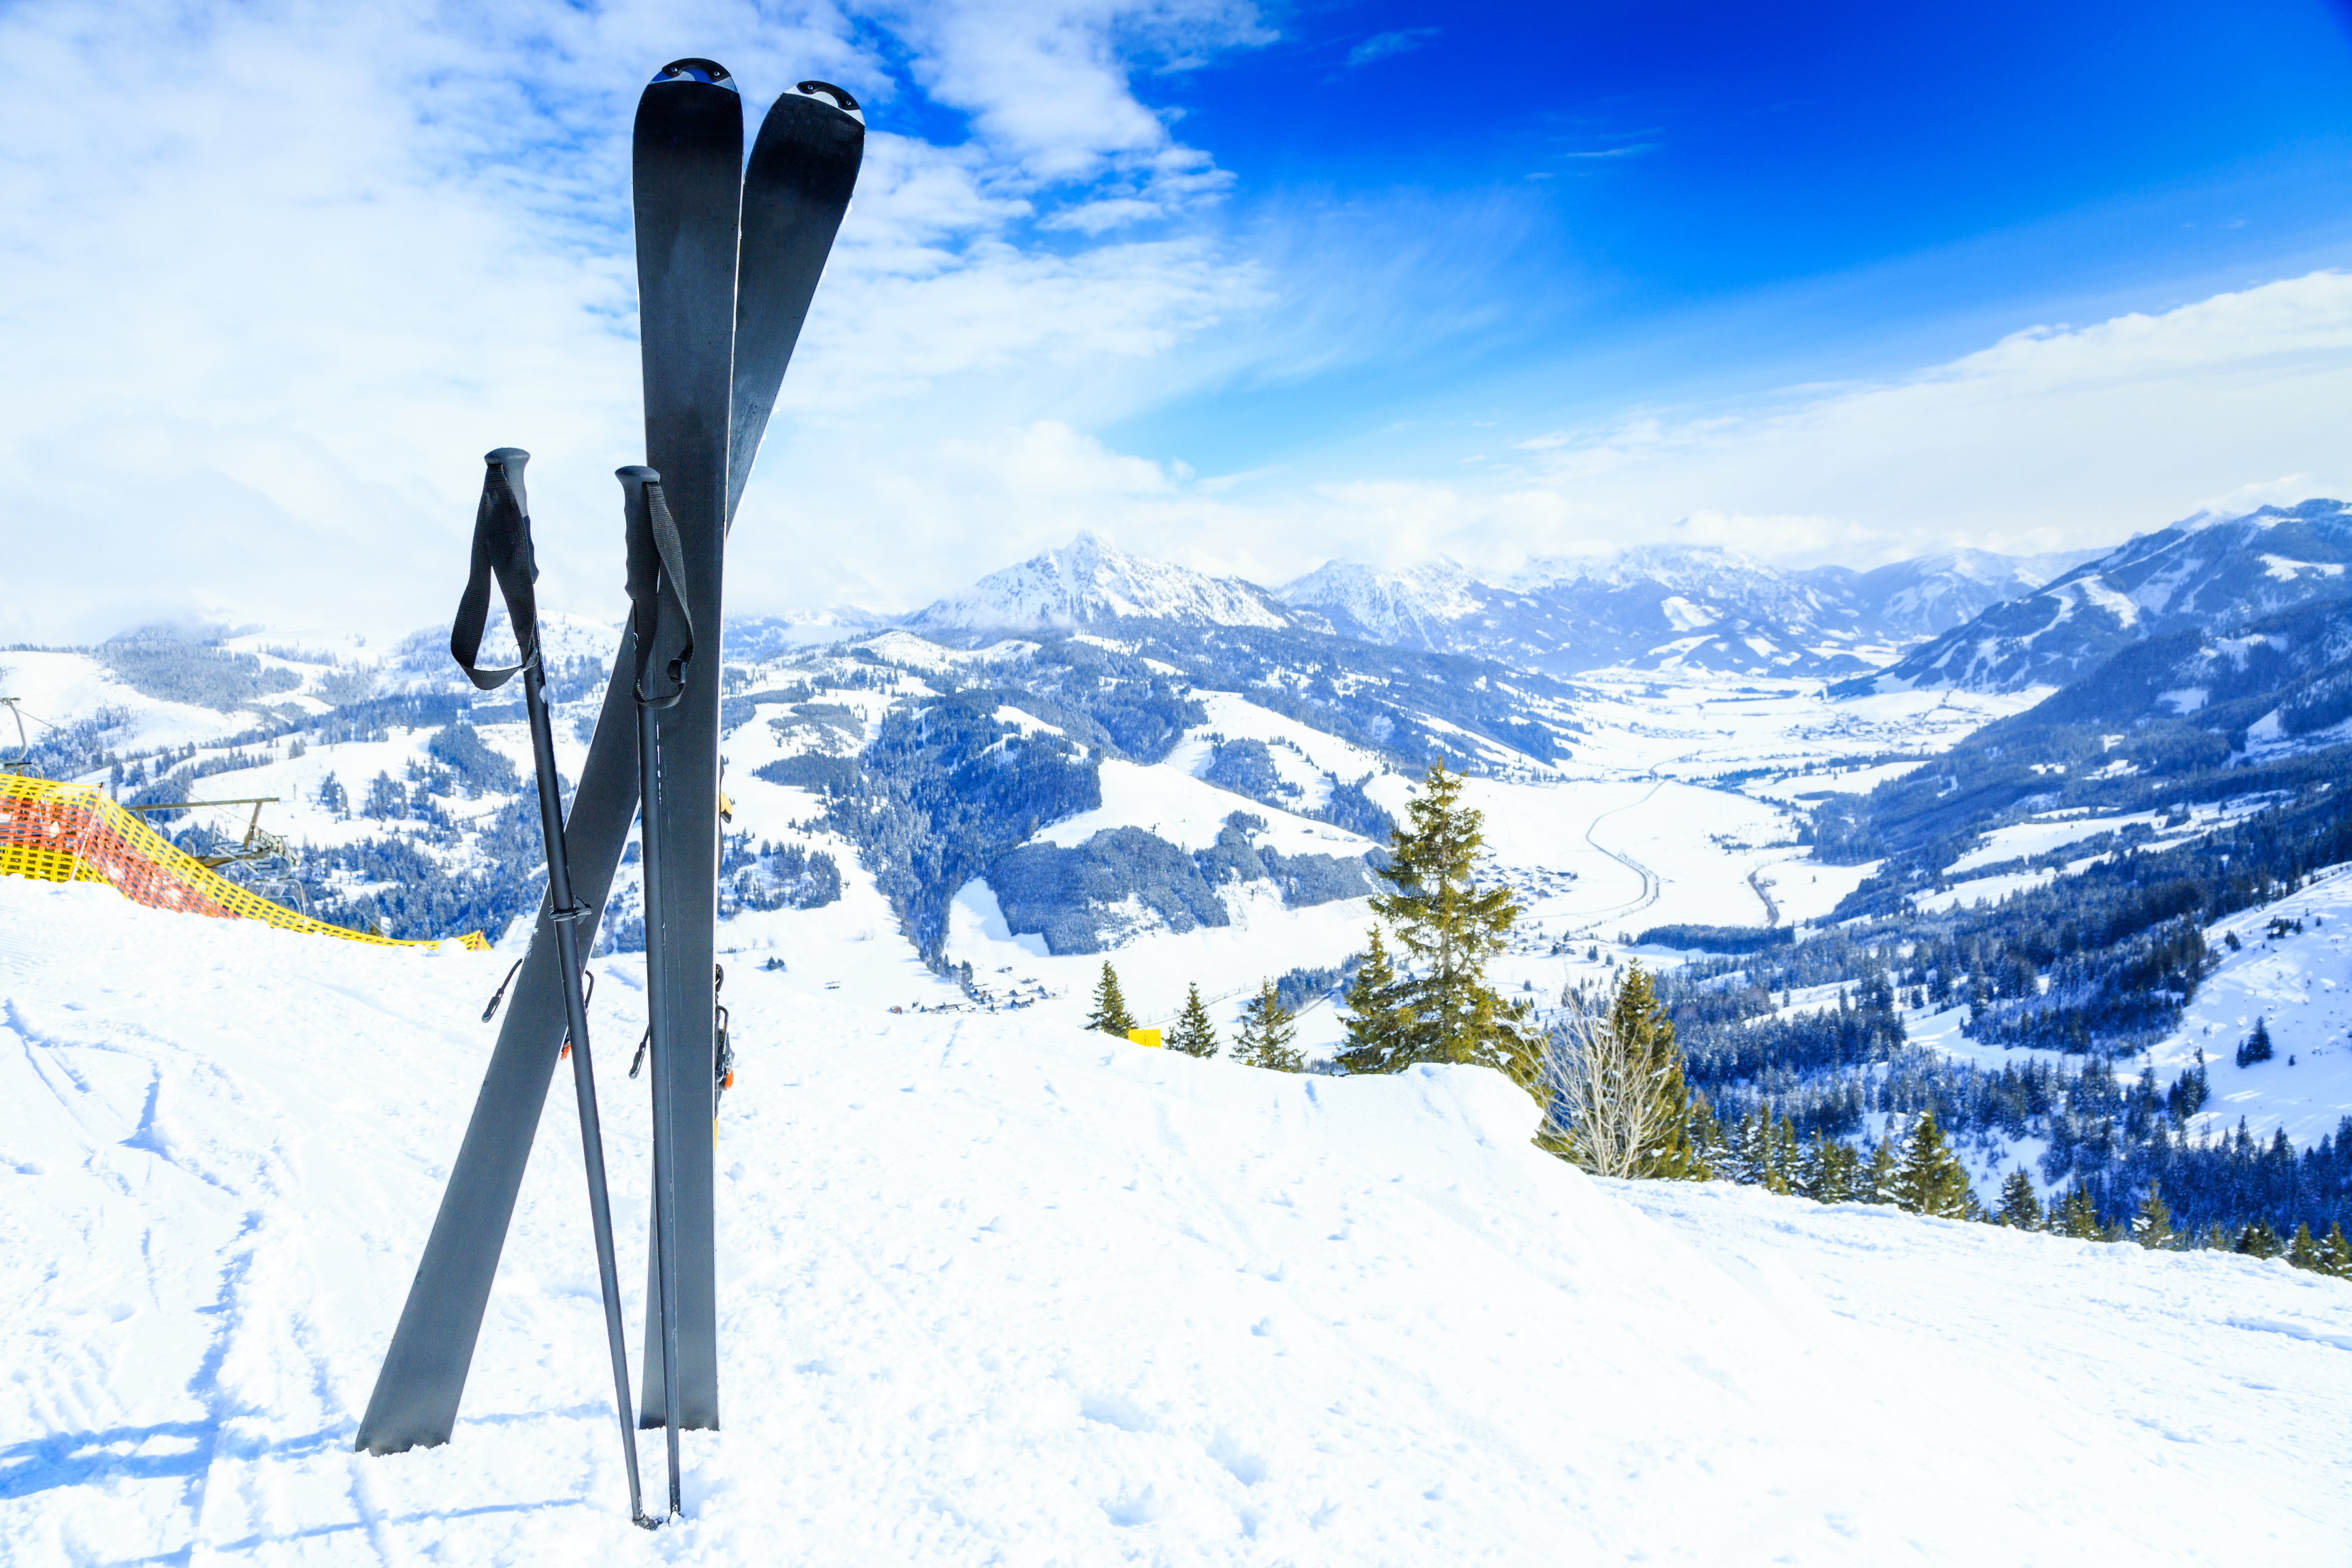 skis and ski poles